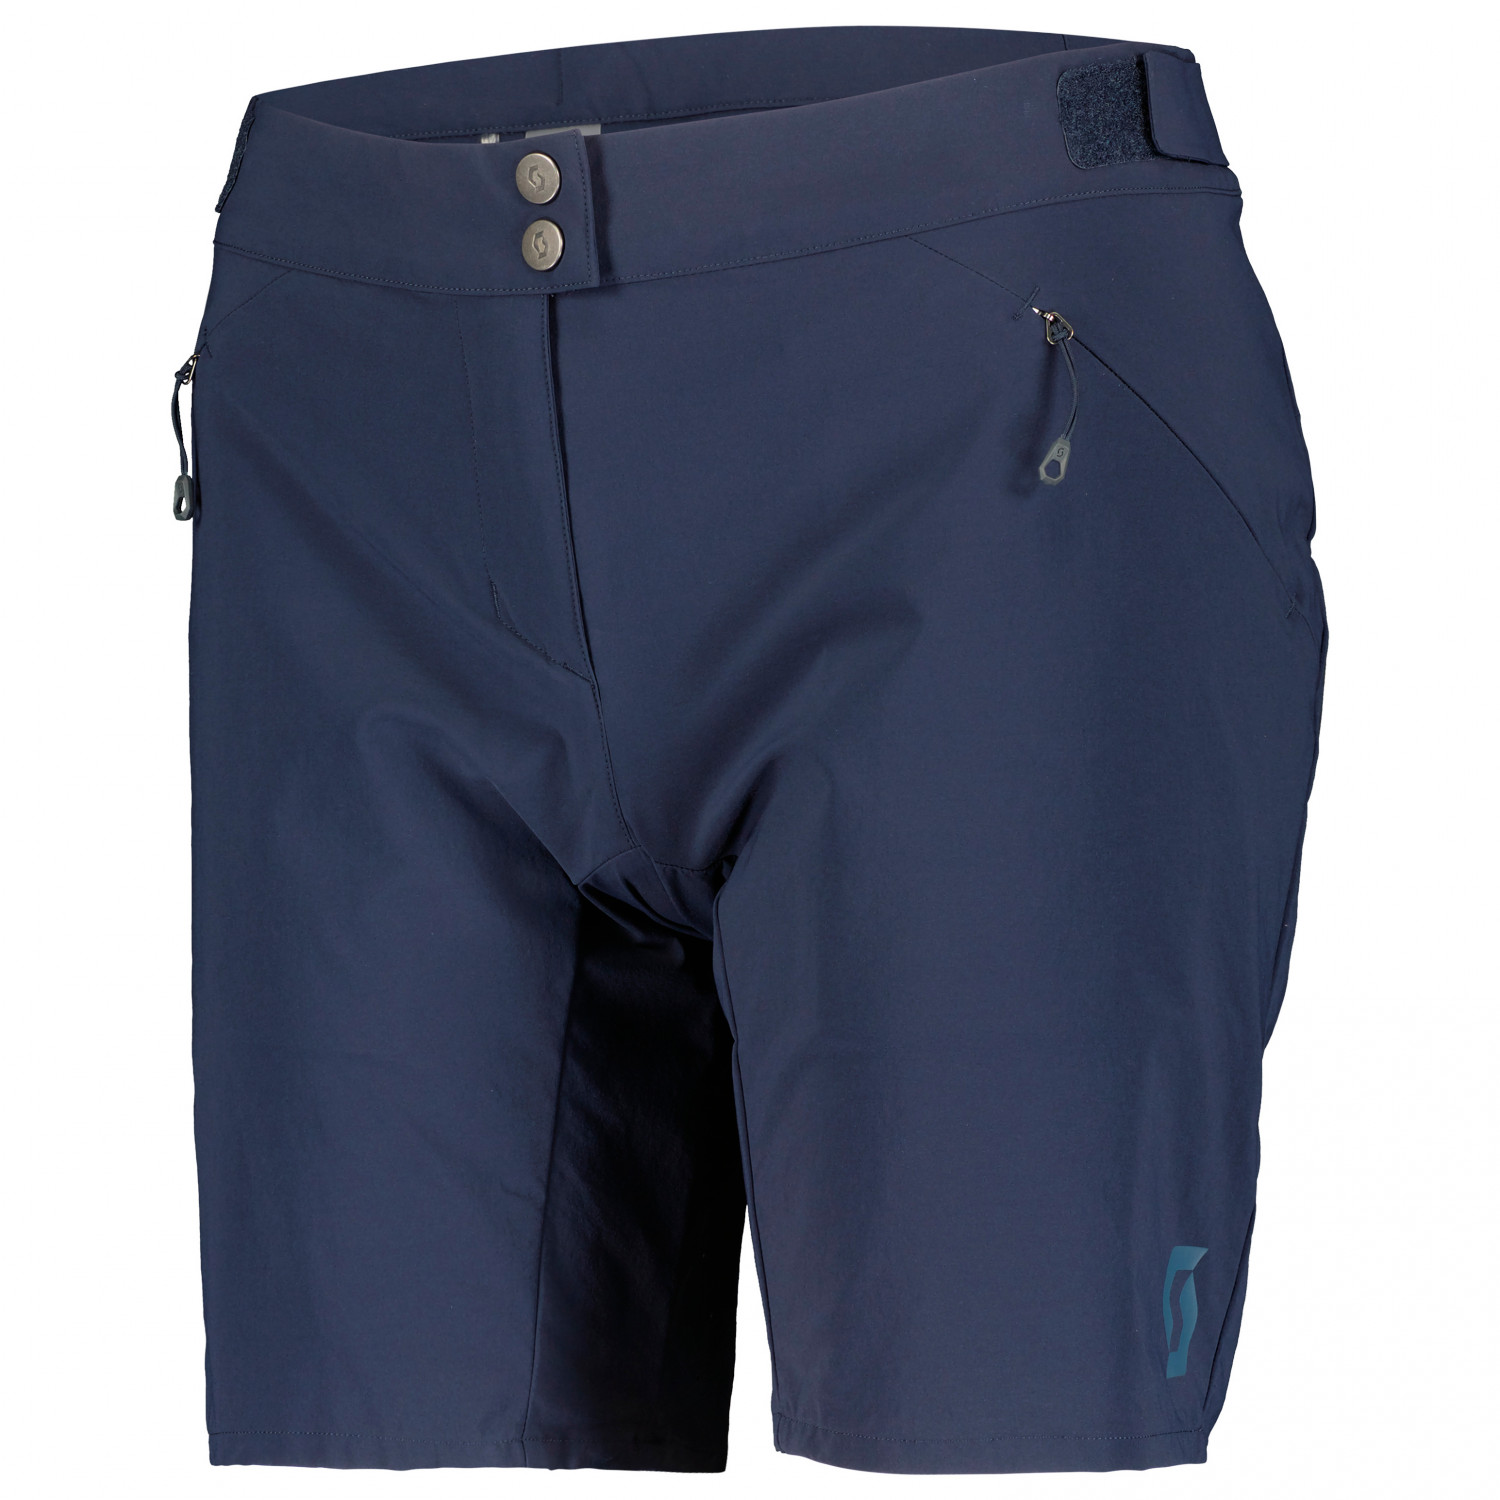 Велосипедные шорты Scott Women's Shorts Endurance Loose Fit with Pad, темно синий пазл origami лесные тропинки с плакатом 02854 35 дет